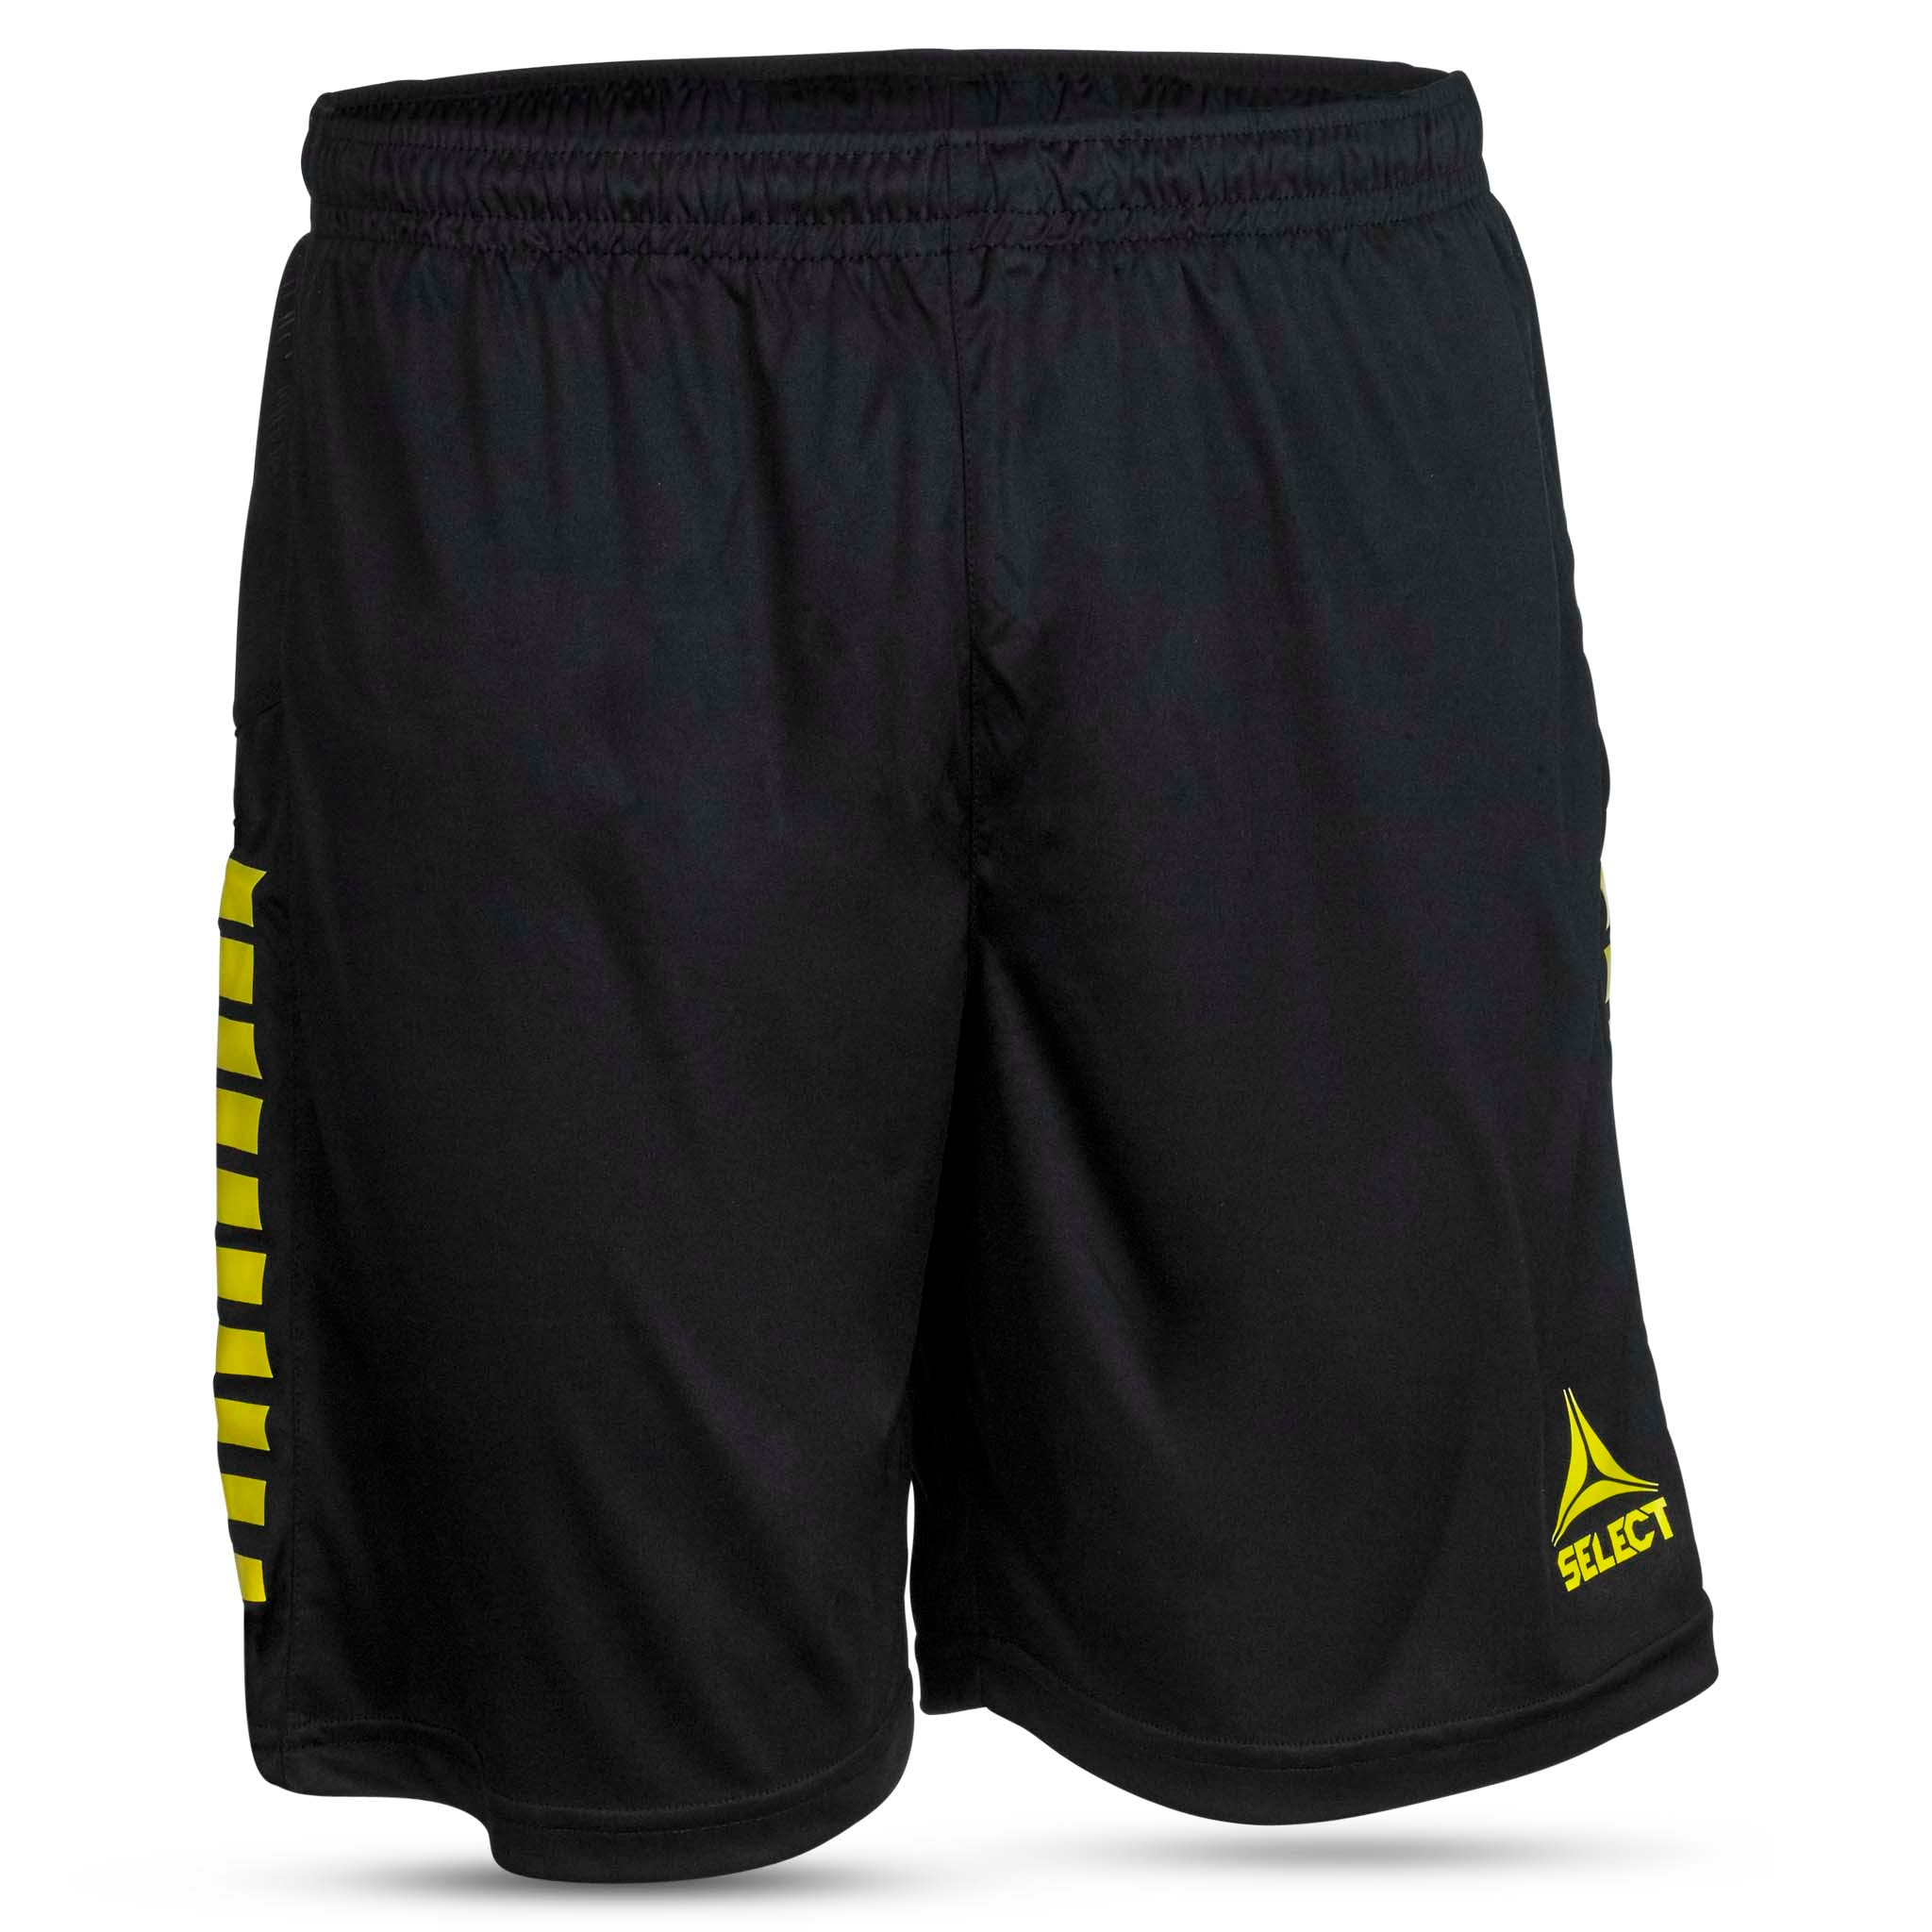 Spain Shorts - Barn #färg_svart/gul